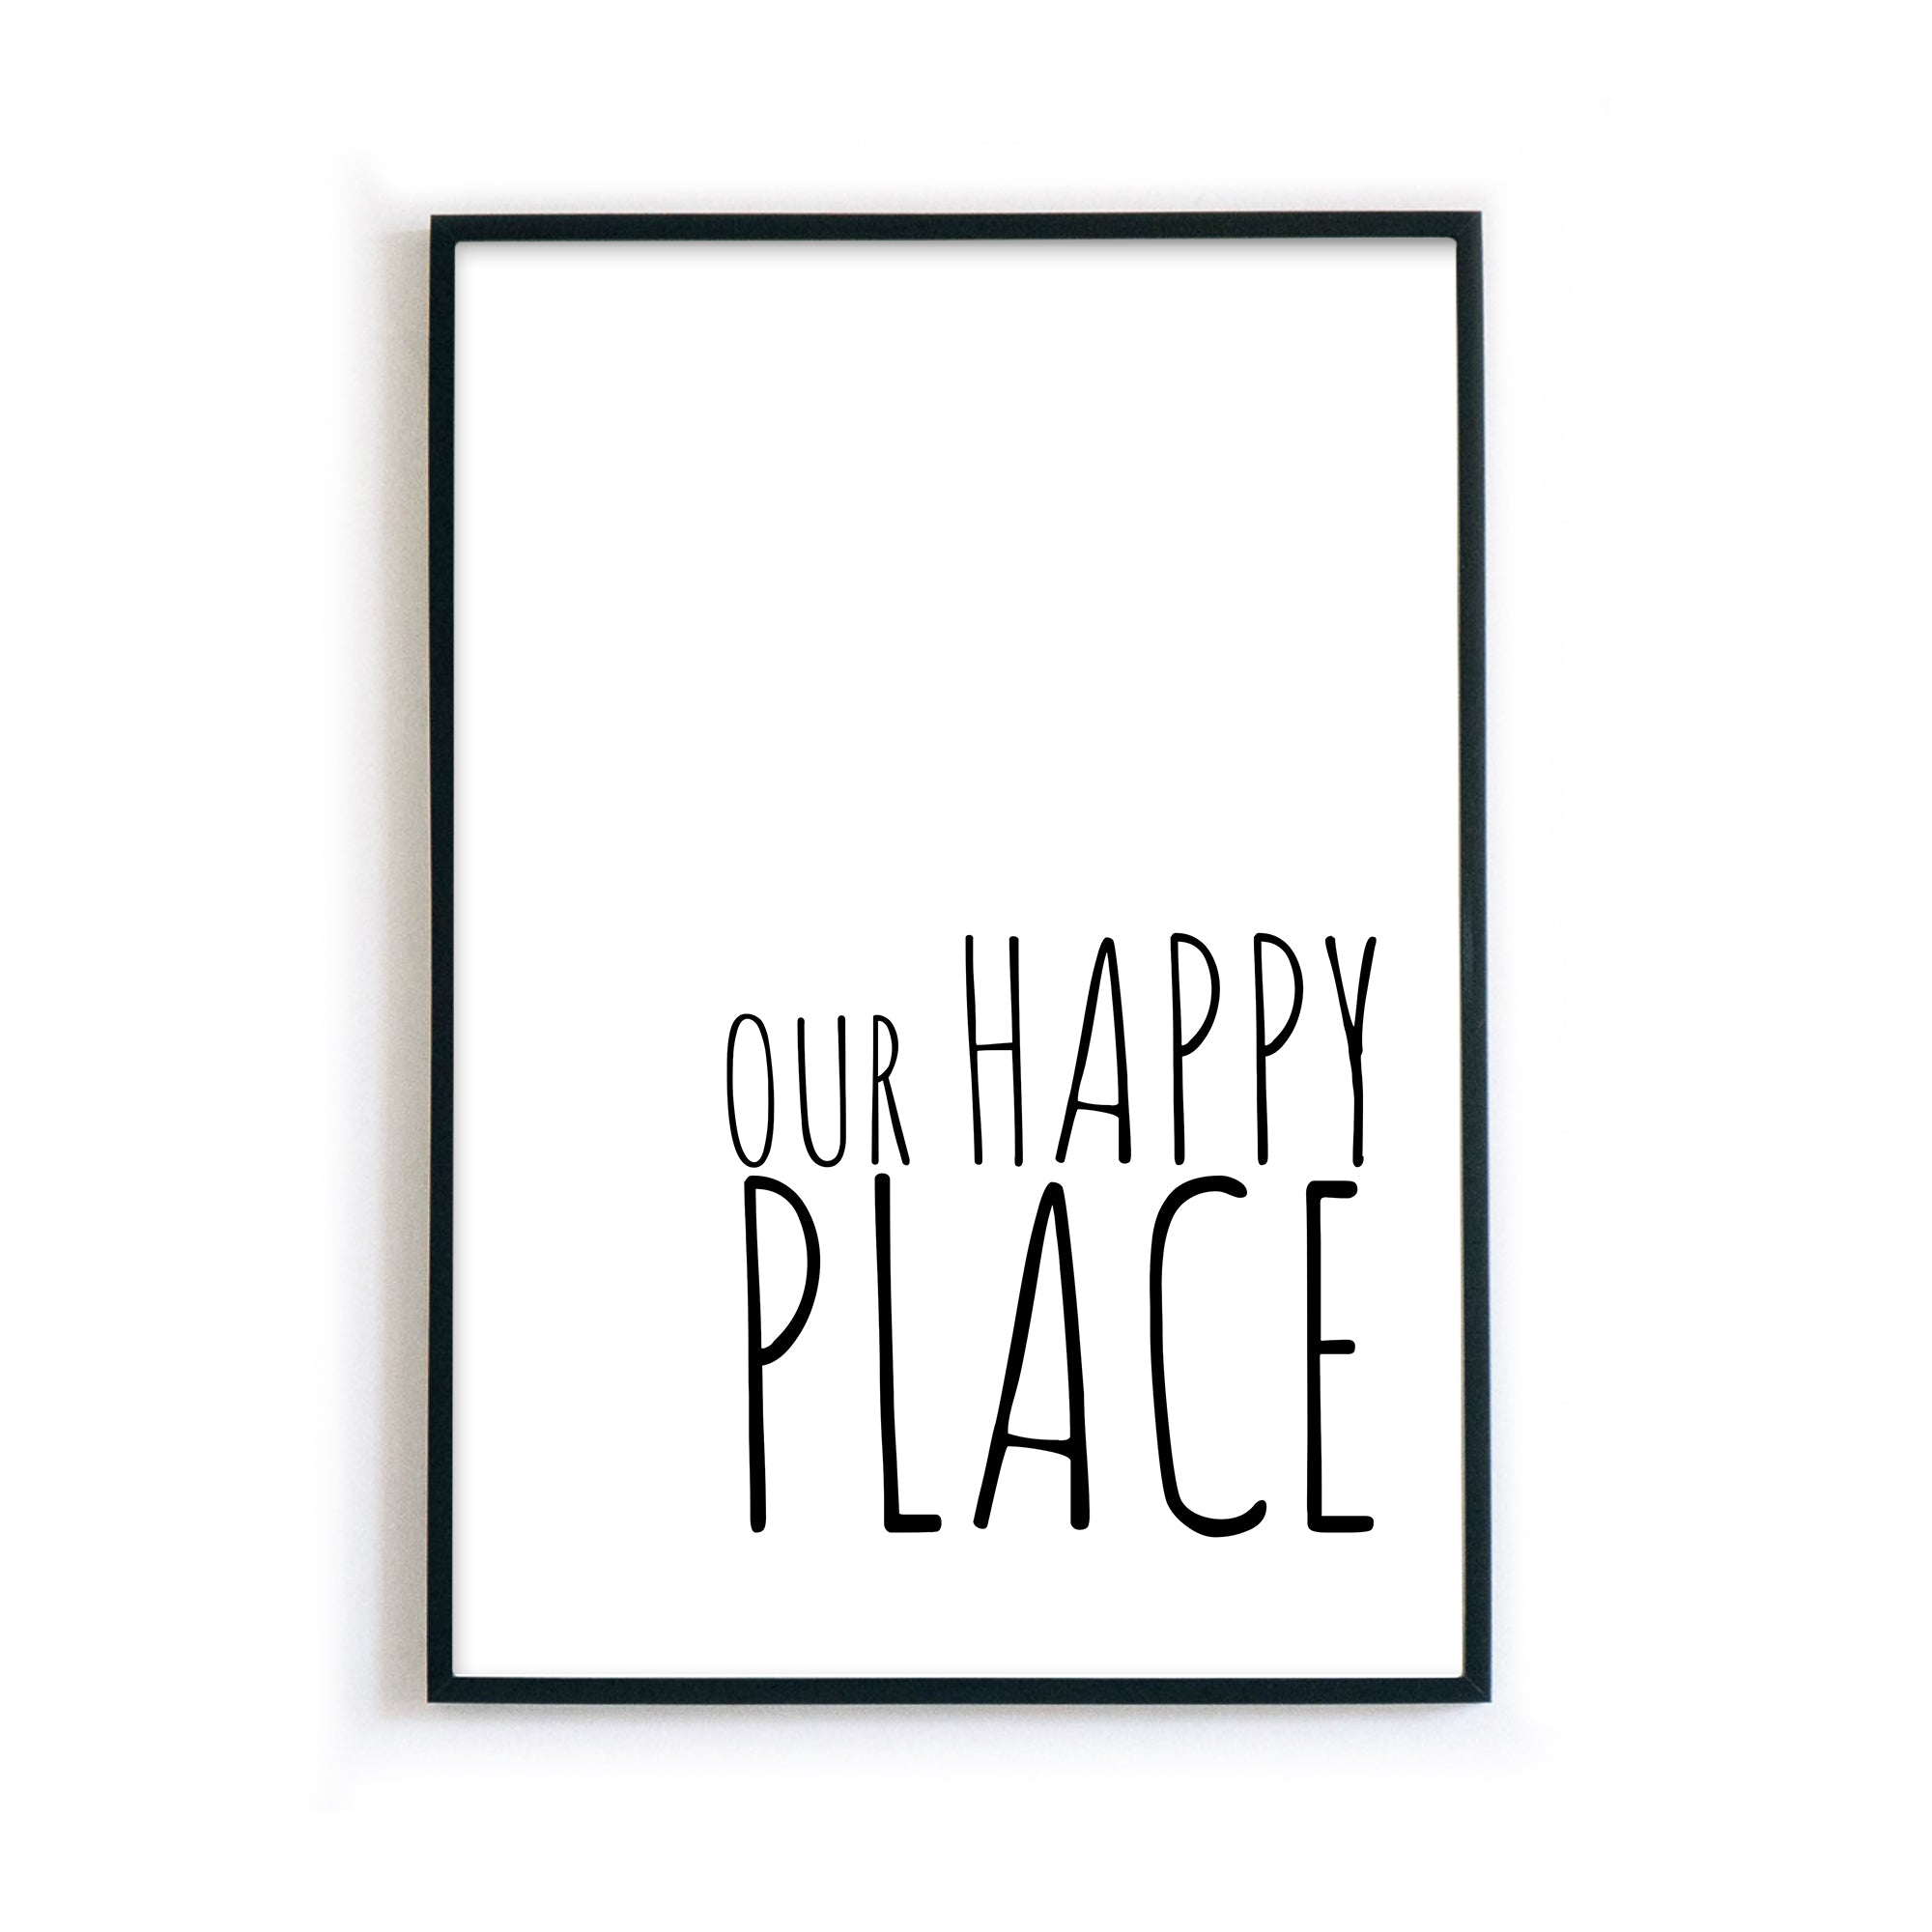 4one-pictrues-happy-place-wohnzimmer-poster-typo-schwarz-weiss-quotes-bild-a4-rahmen.jpg